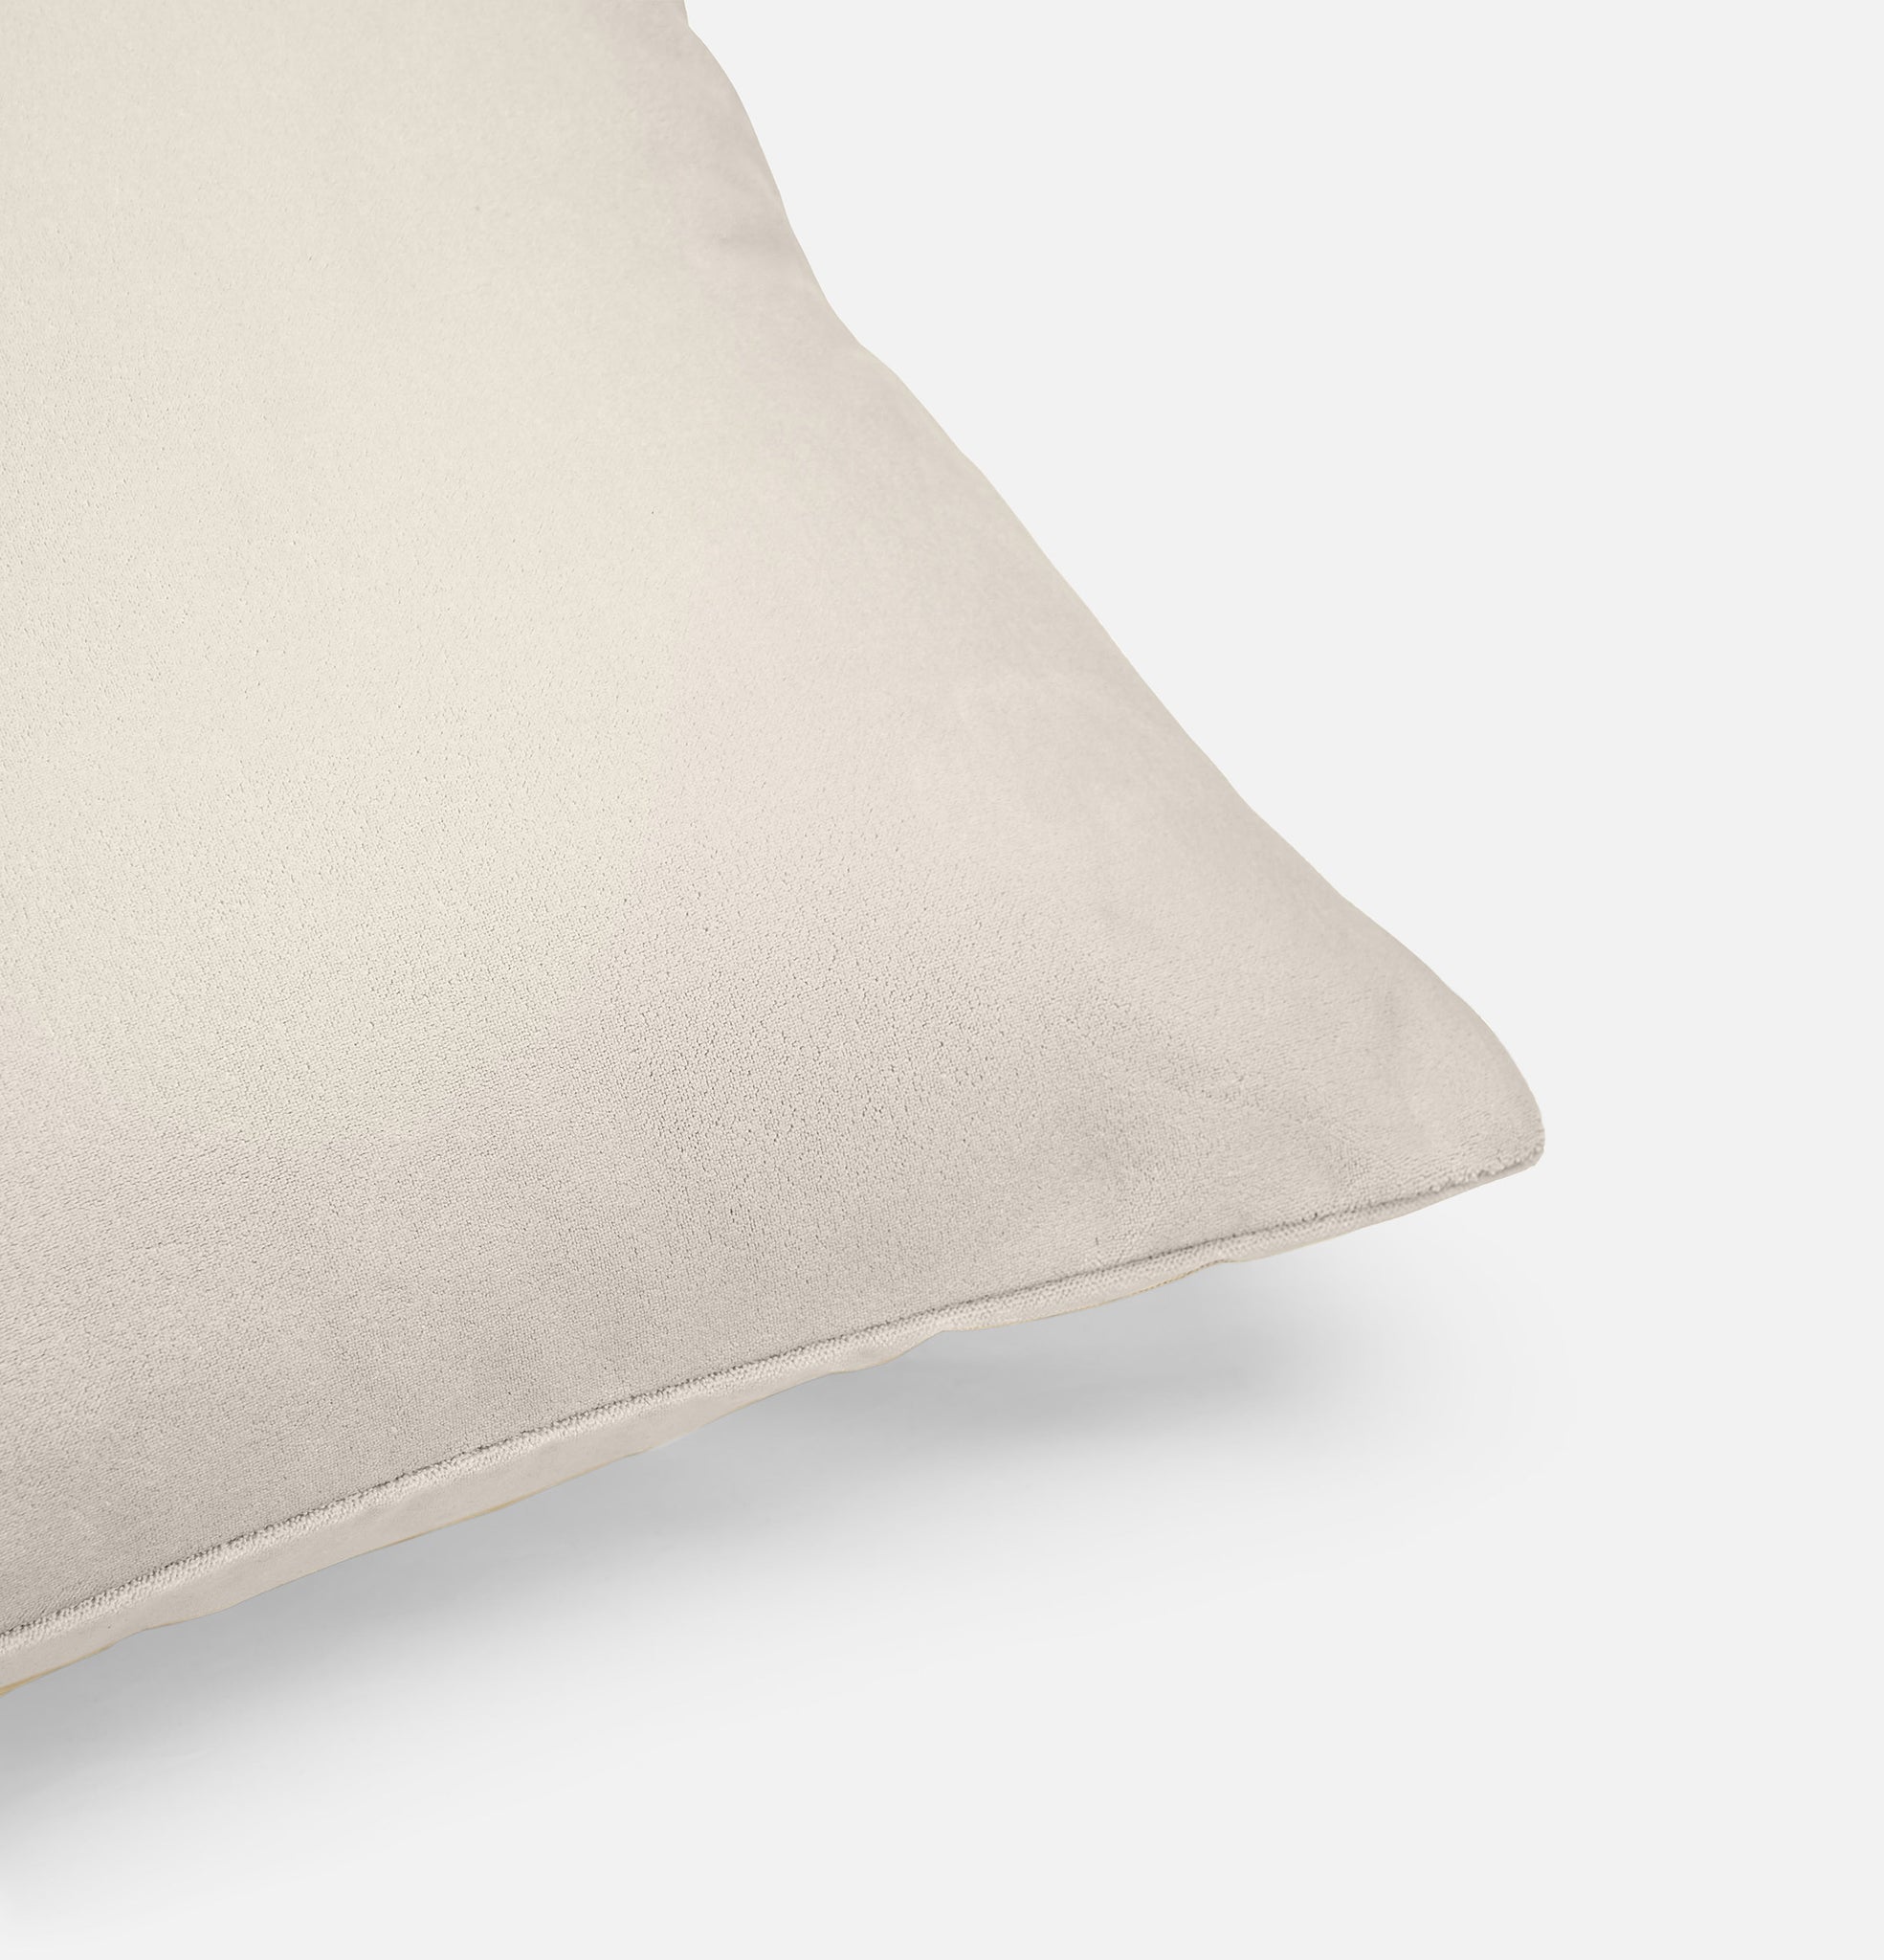 Corner detail of cloudy white velvet cushion